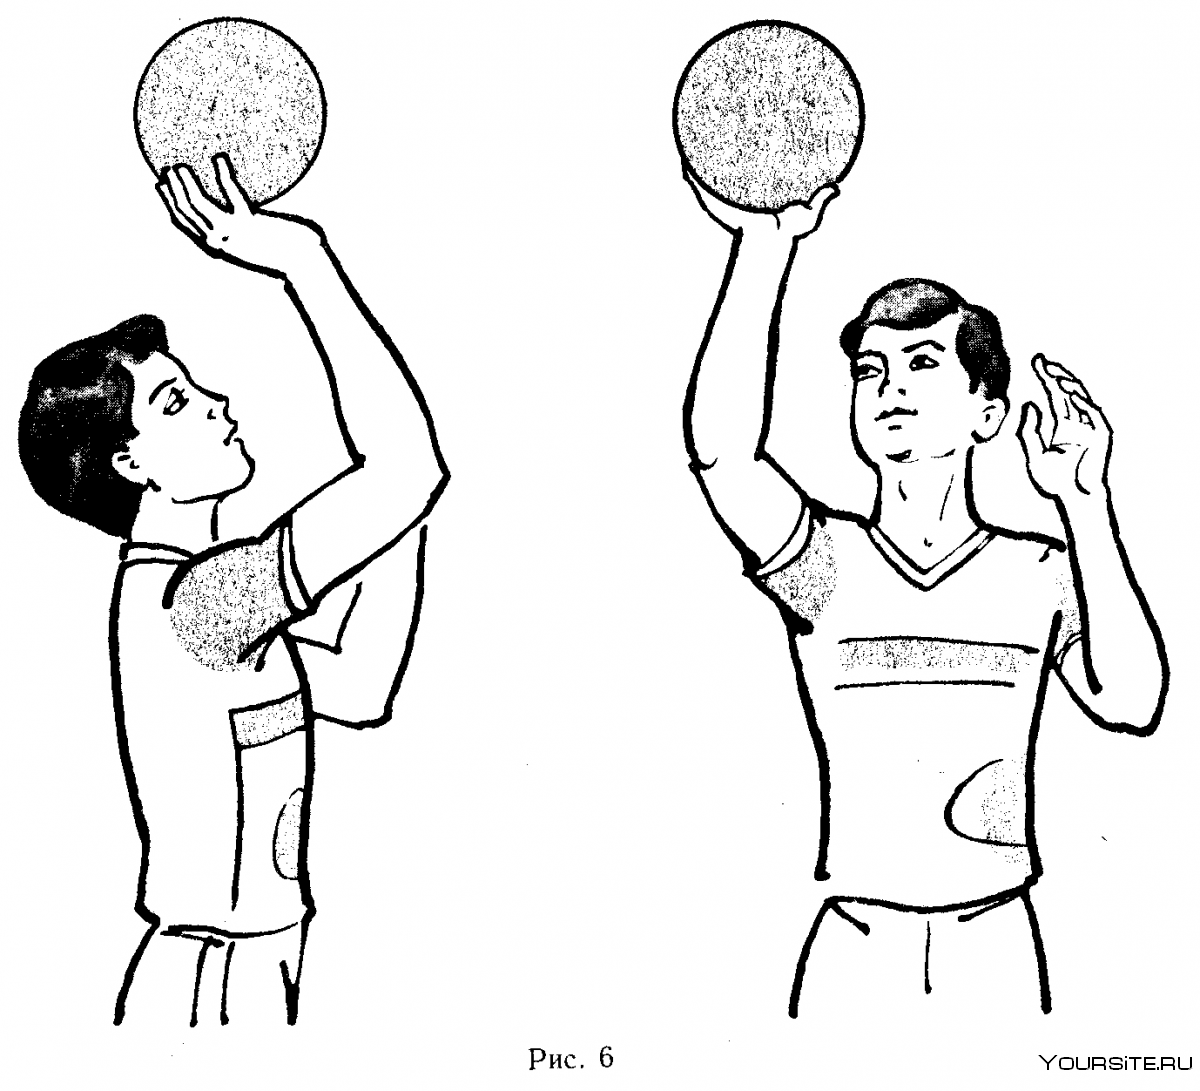 Передача мяча сверху двумя руками в волейболе